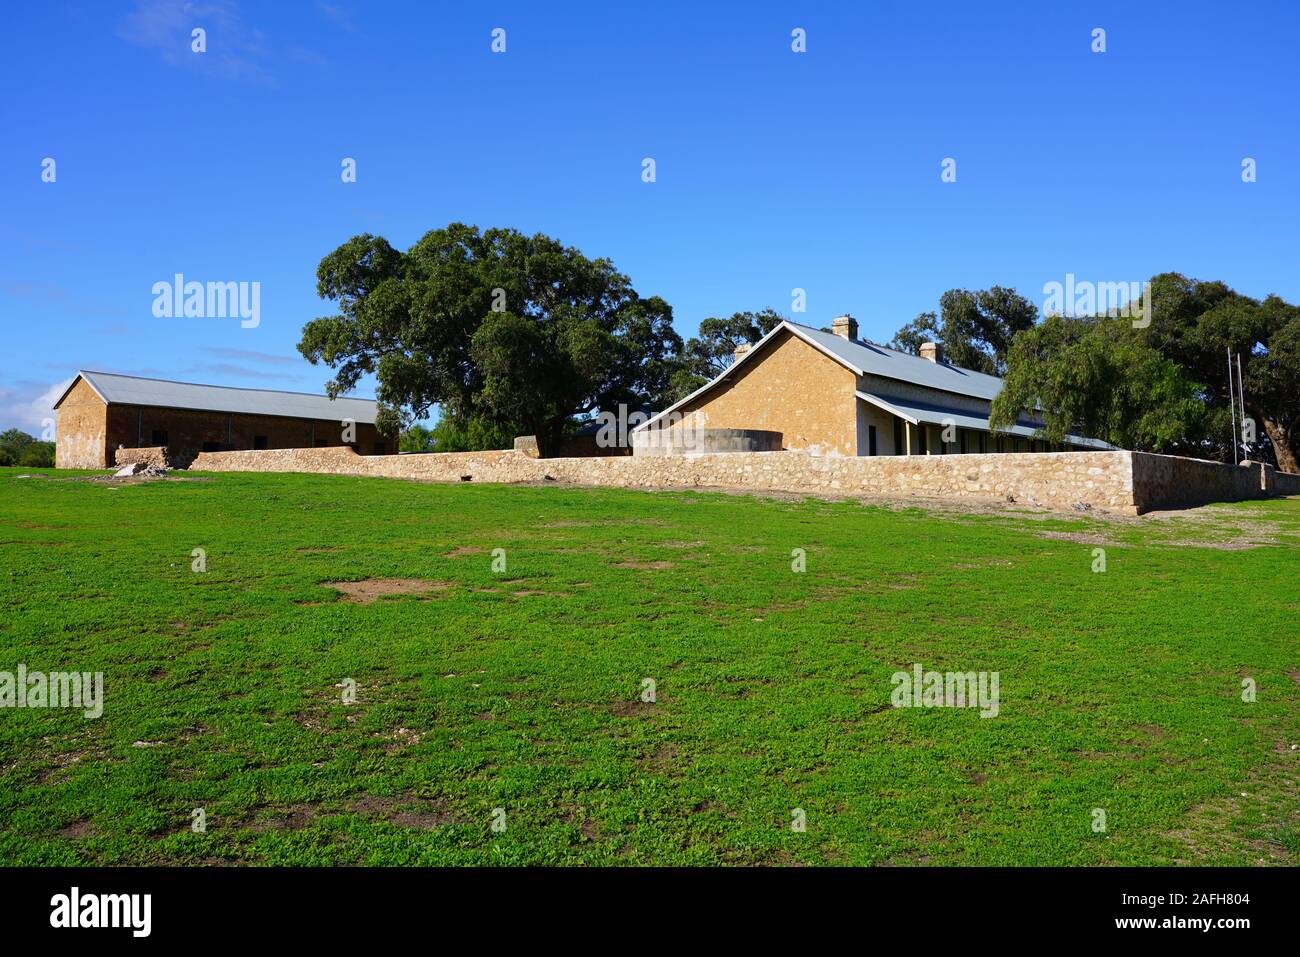 GREENOUGH, Australia 9 Jul 2019- Vista del asentamiento histórico Greenough Hamlet, un hito en la Costa del Coral en Australia Occidental. Foto de stock